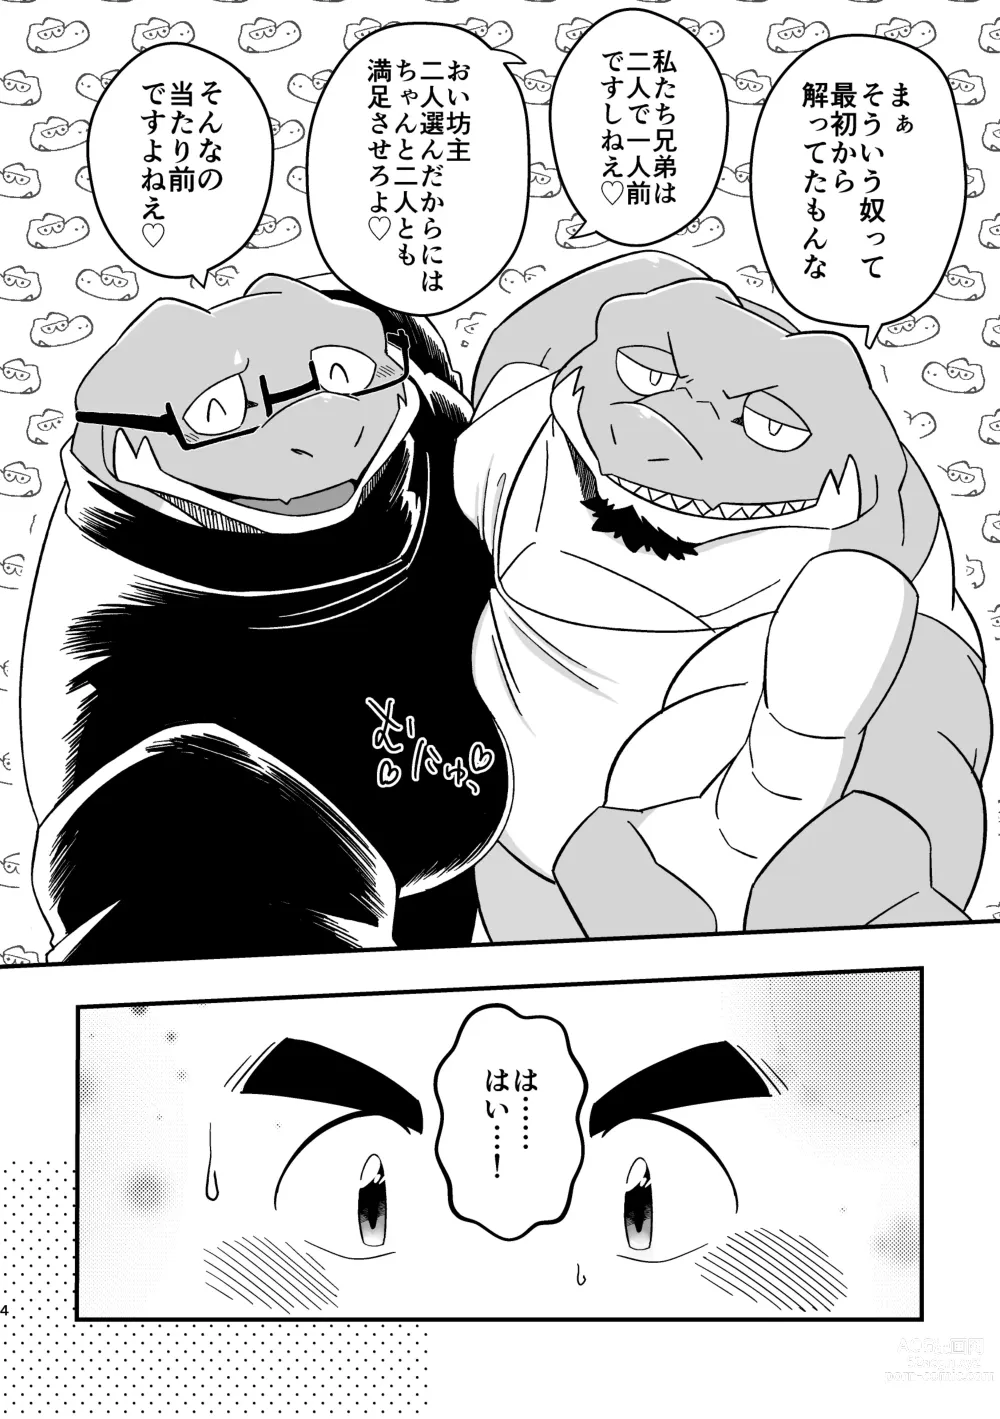 Page 4 of doujinshi Youkoso! Ifumouryou Dormitory Double Alligator End